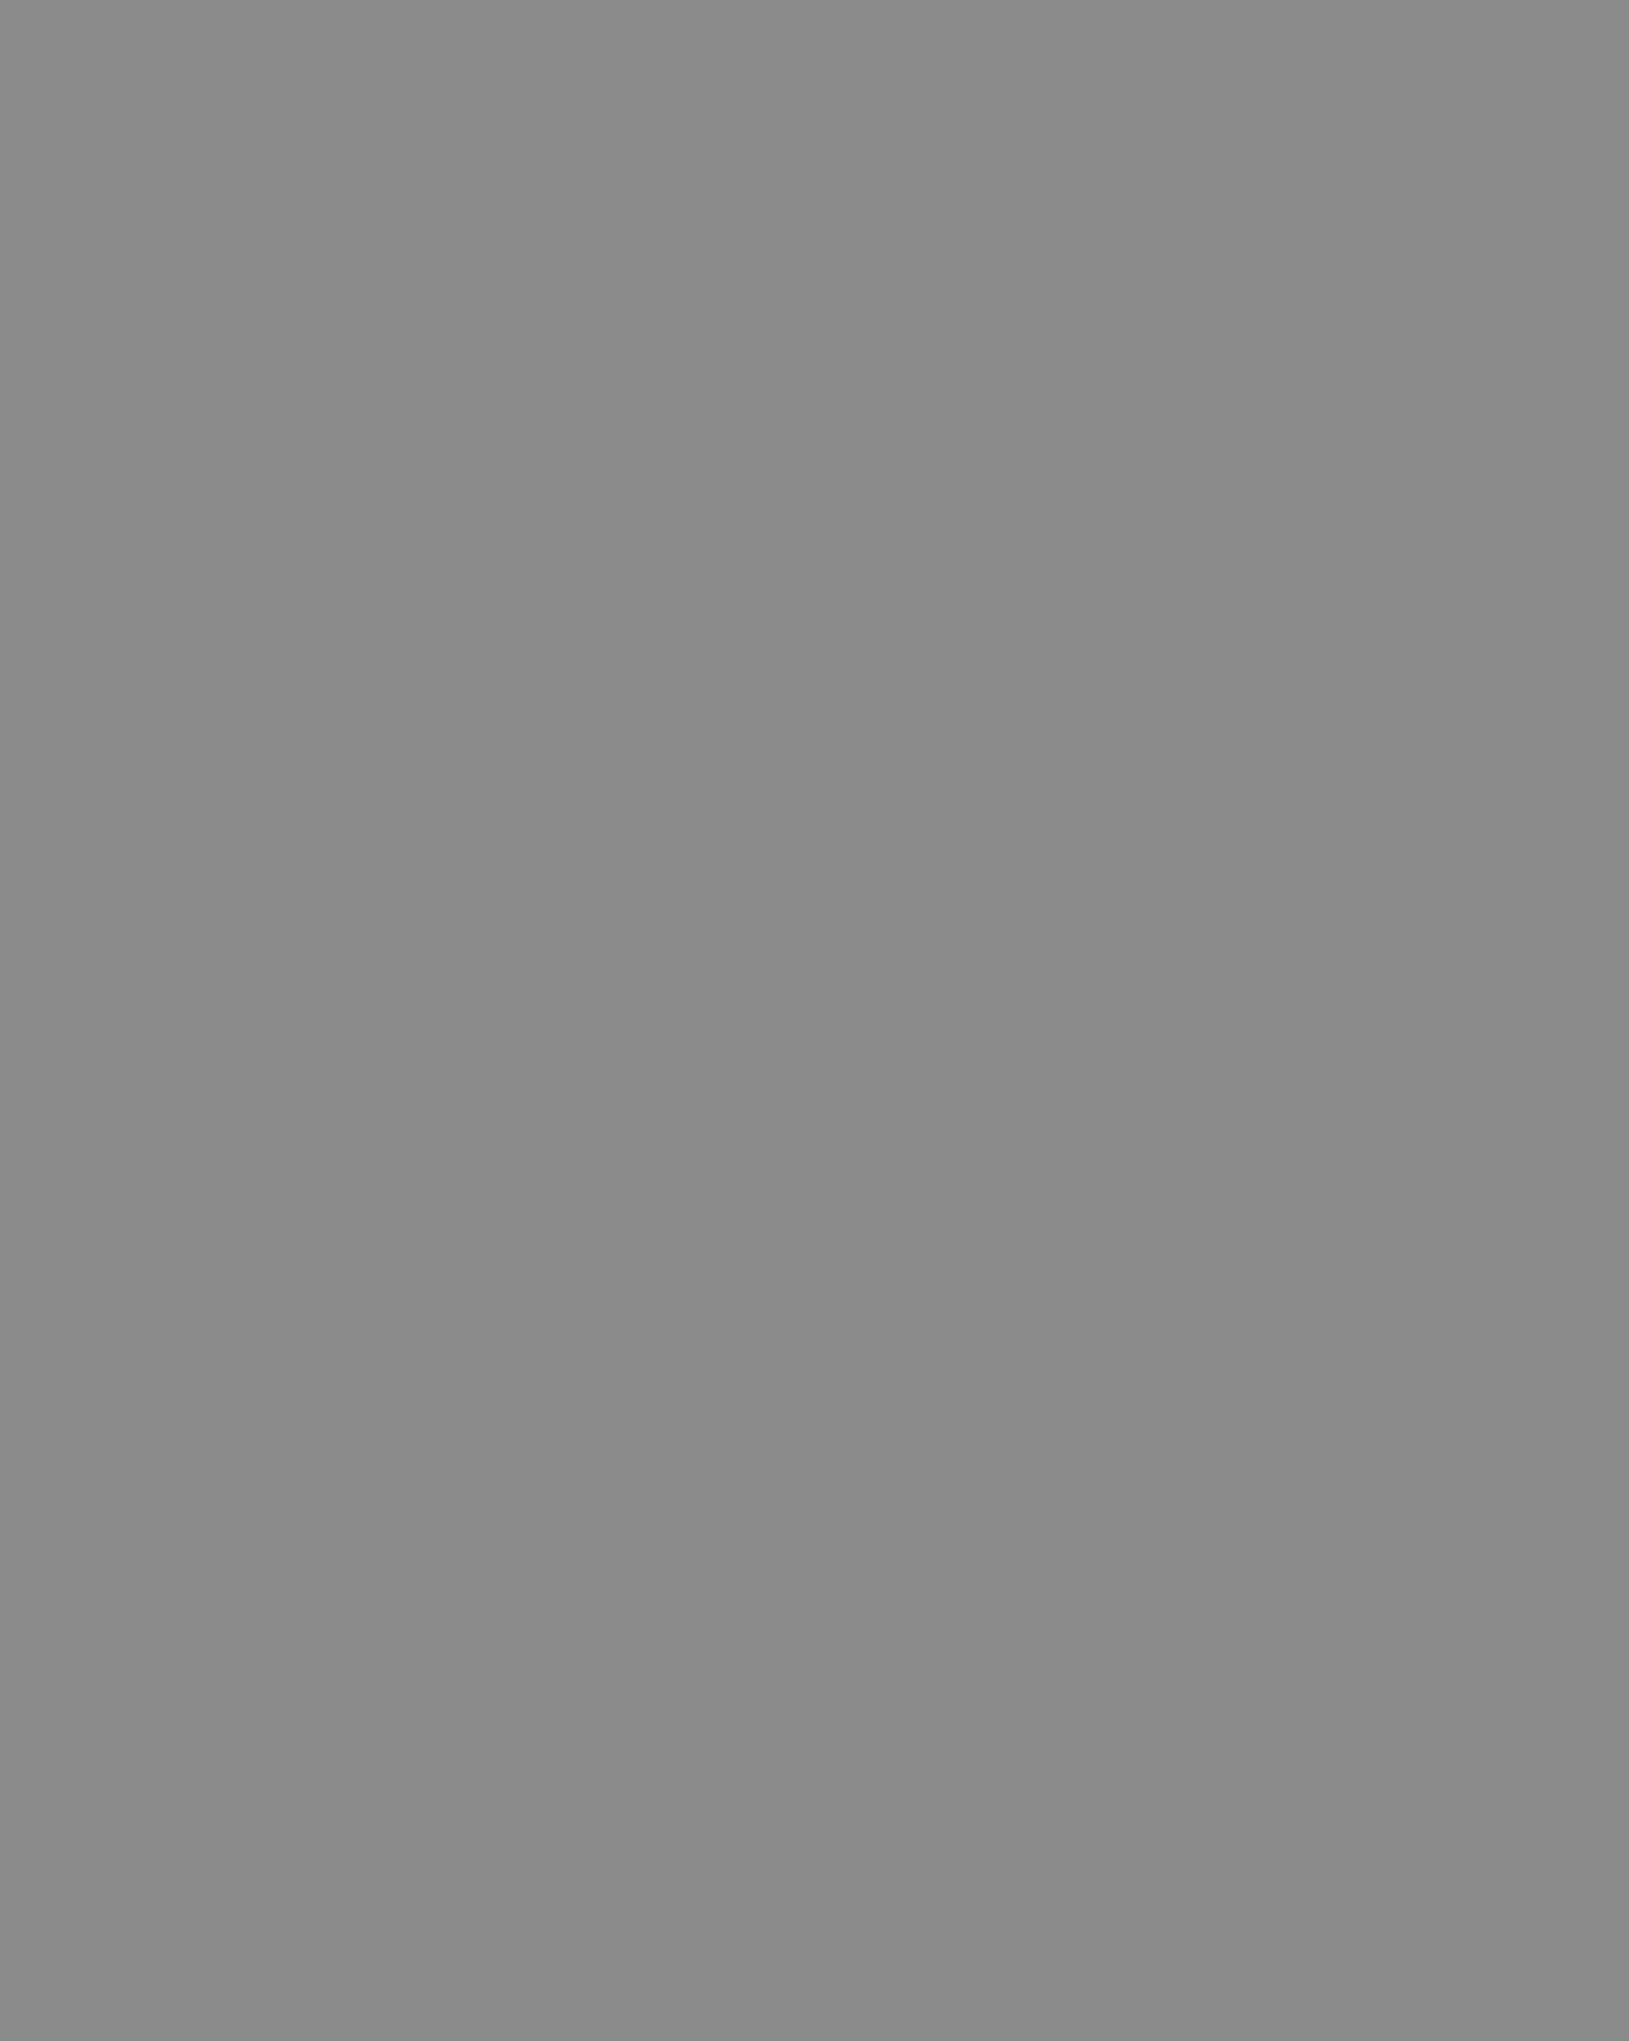 Писатель Виктор Астафьев. 1970-е годы. Фотография: Дивногорский художественный музей, Дивногорск, Красноярский край